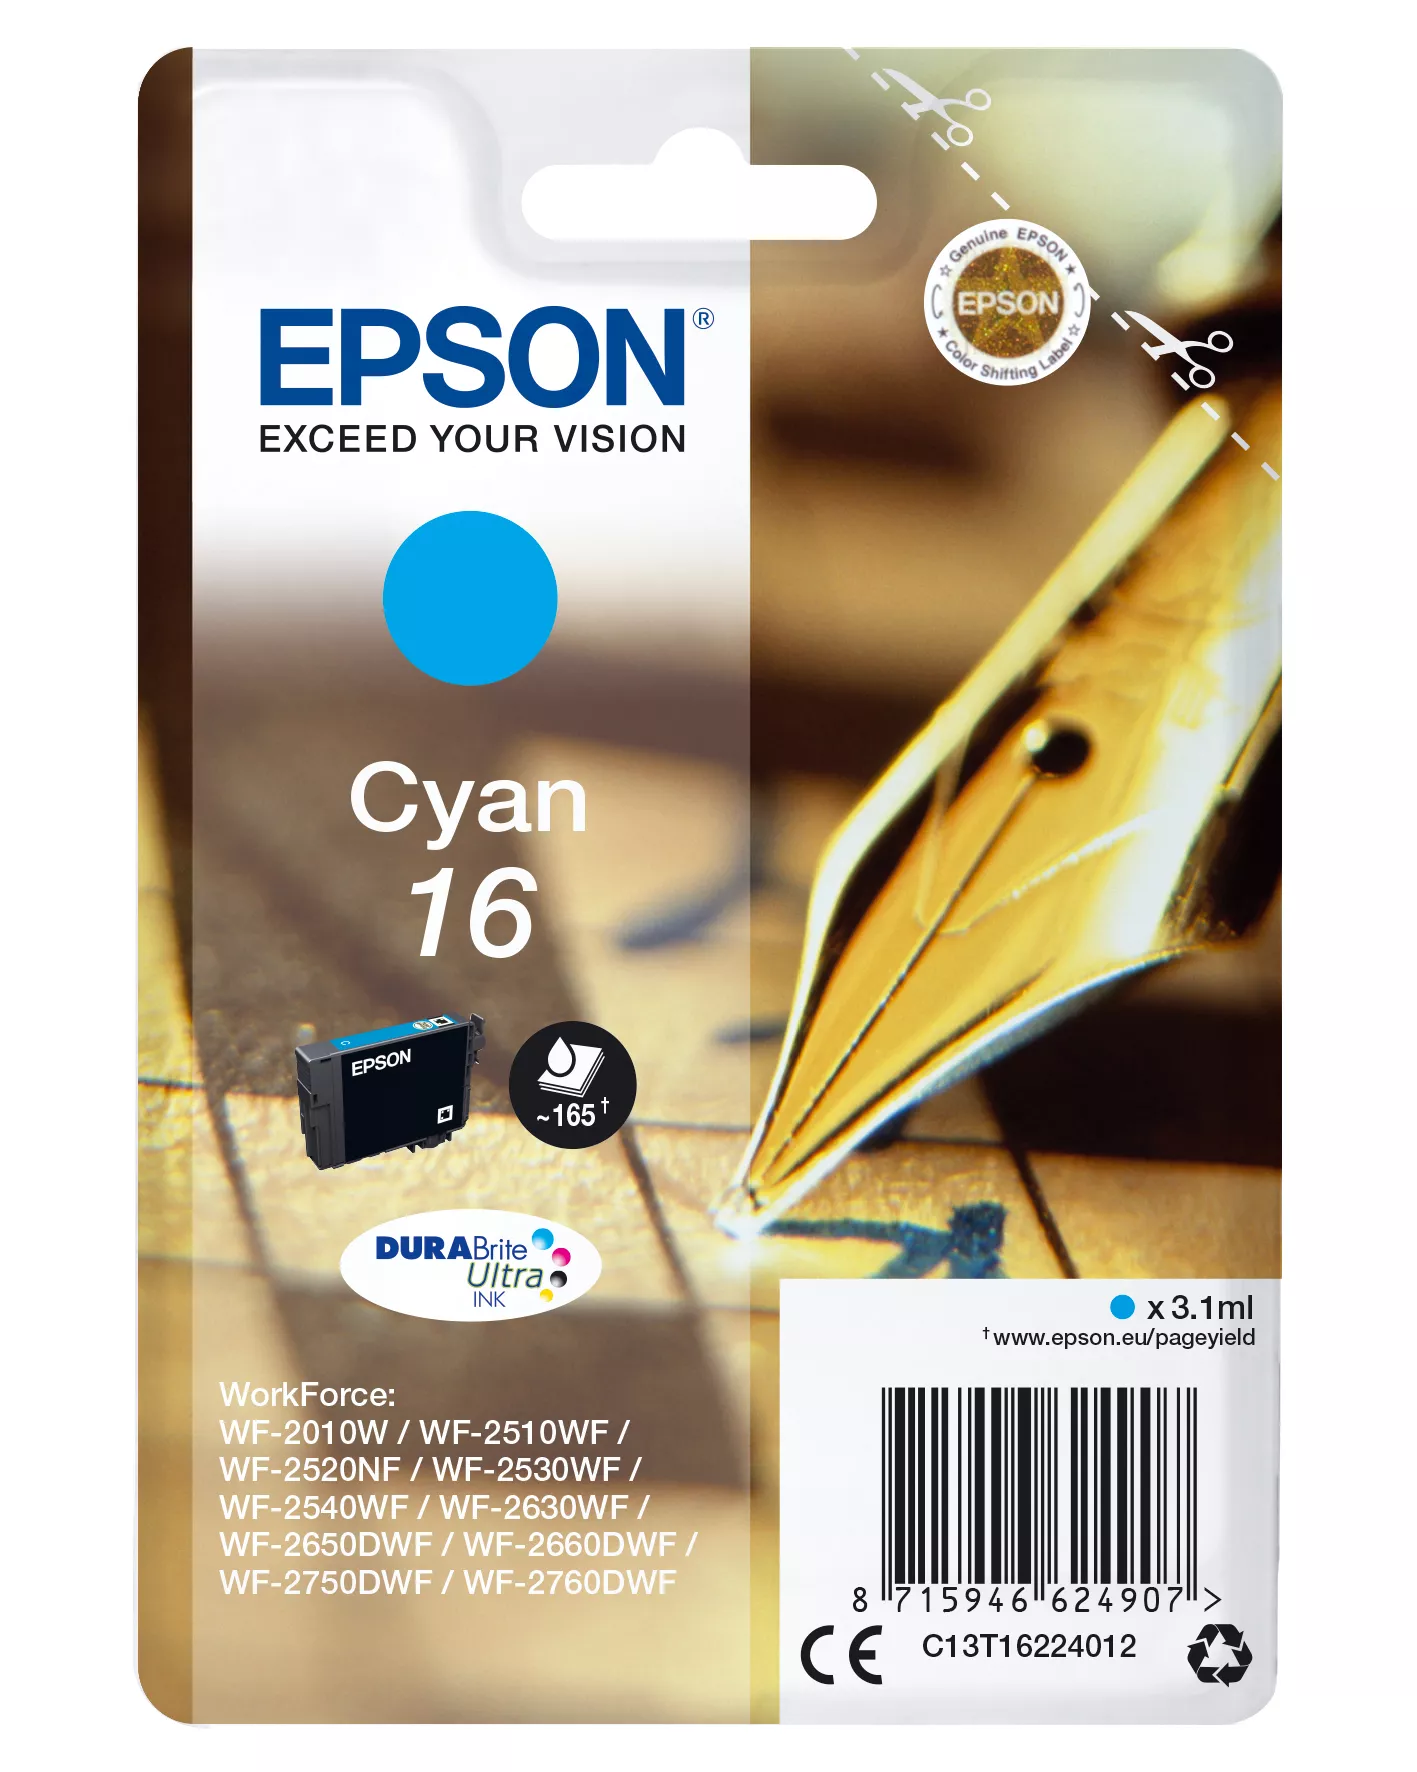 Achat EPSON 16 cartouche encre cyan capacité standard 3.1ml 165 au meilleur prix